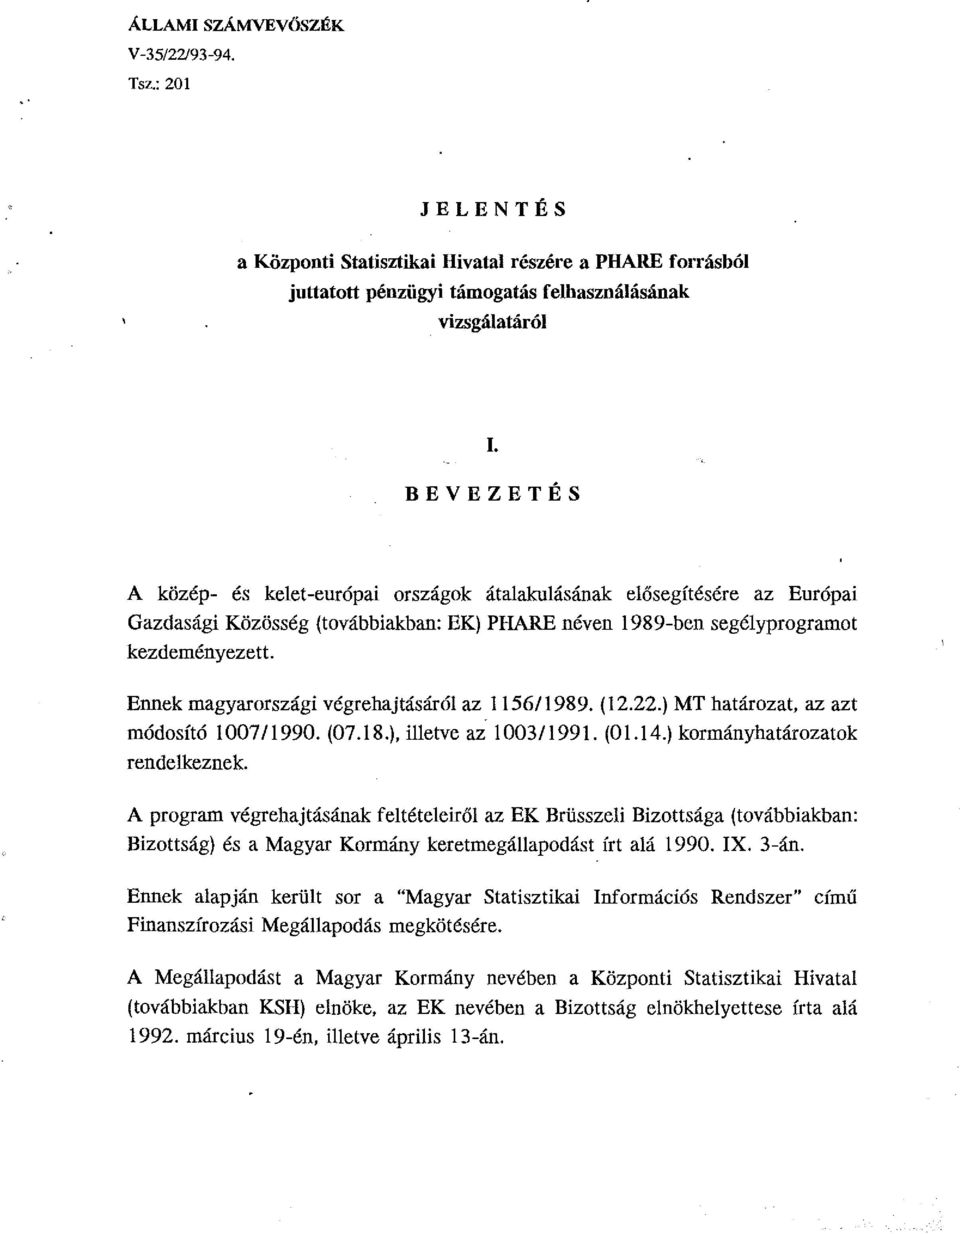 Ennek magyarországi végrehajtásáról az 1156/1989. (12.22.) MT határozat, az azt módosító 100711990. (07.18.), illetve az 1003/1991. (01.14.) kormányhatározatok rendelkeznek.